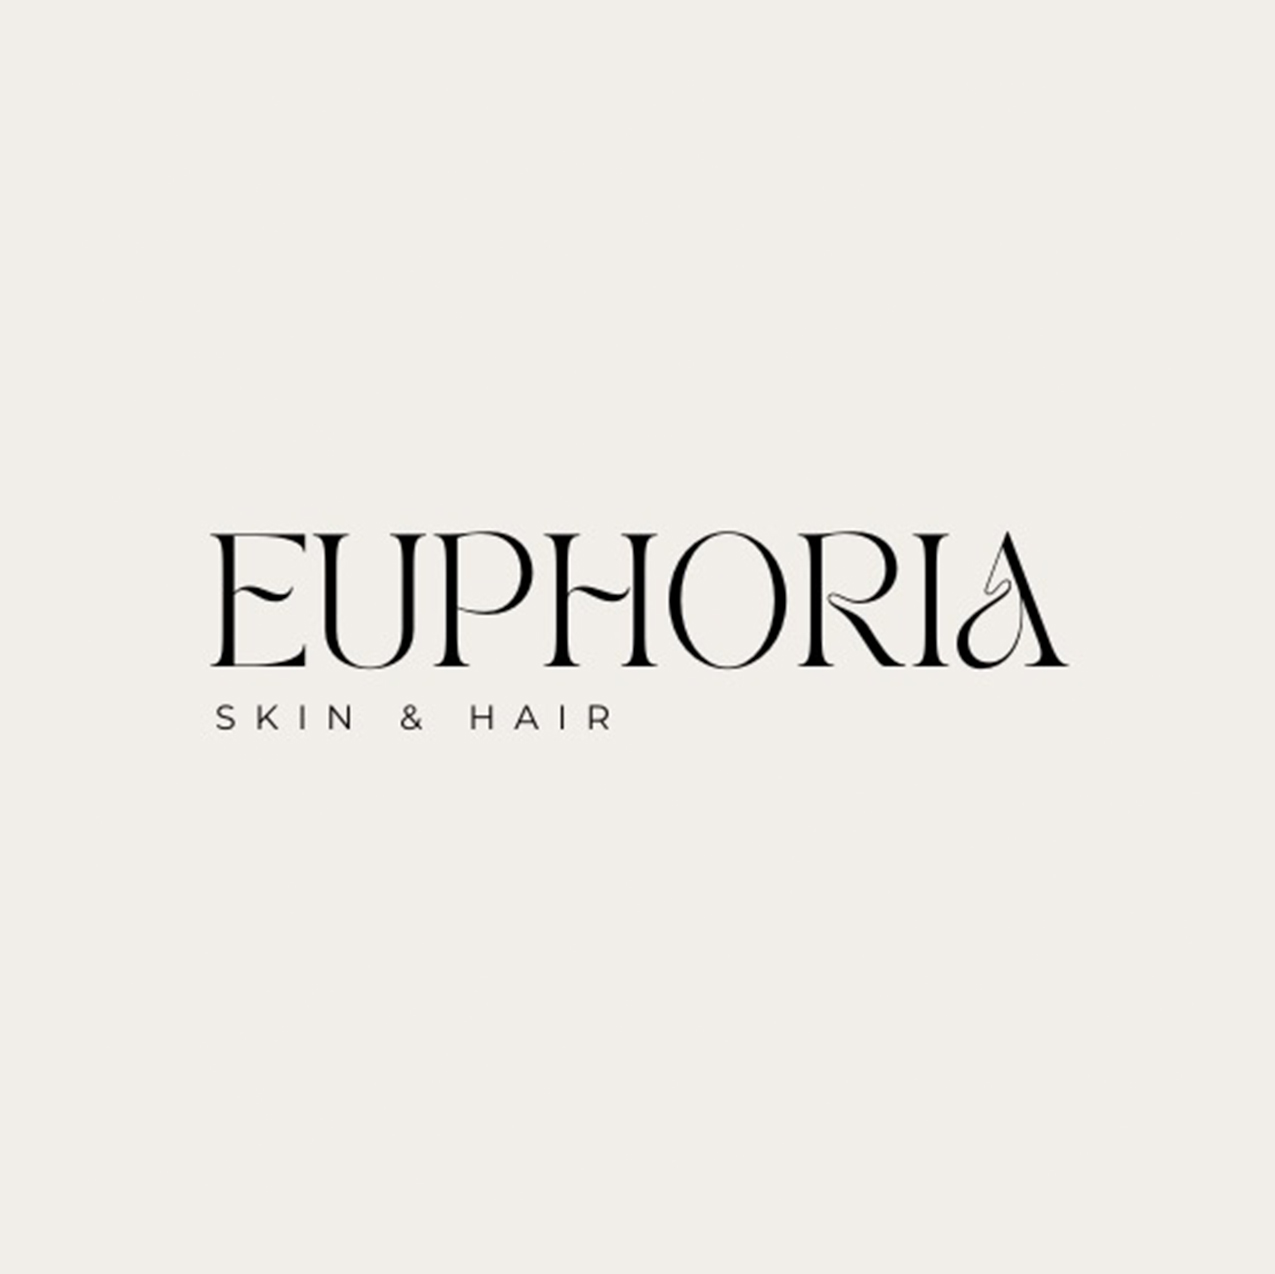 Euphoria Skin & Hair